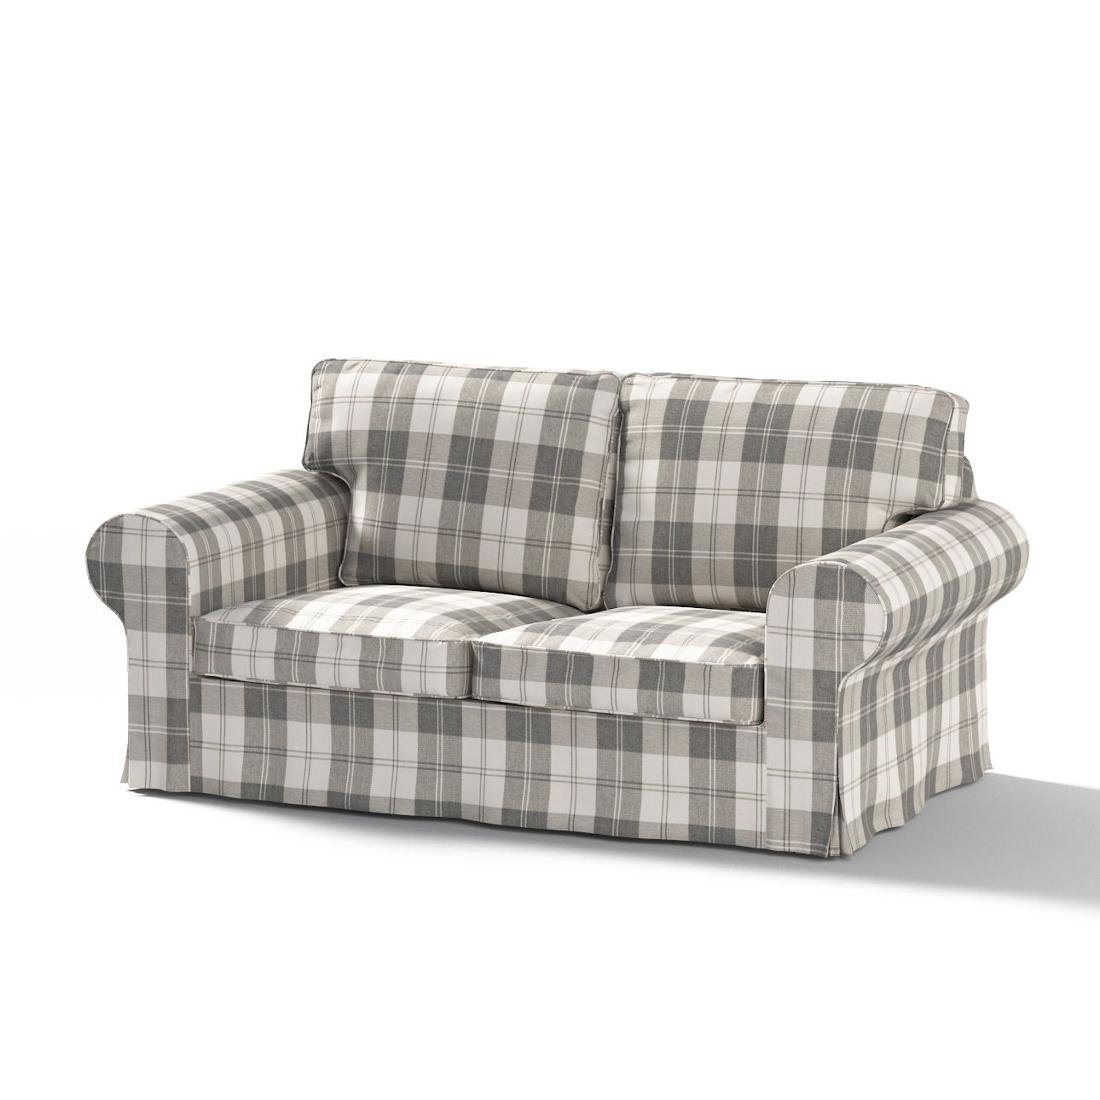 Dekoria Pokrowiec na sofę Ektorp 2-osobową rozkładaną model po 2012 krata szaro-biała 200 x 90 x 73 cm Edinburgh 1016-115-79